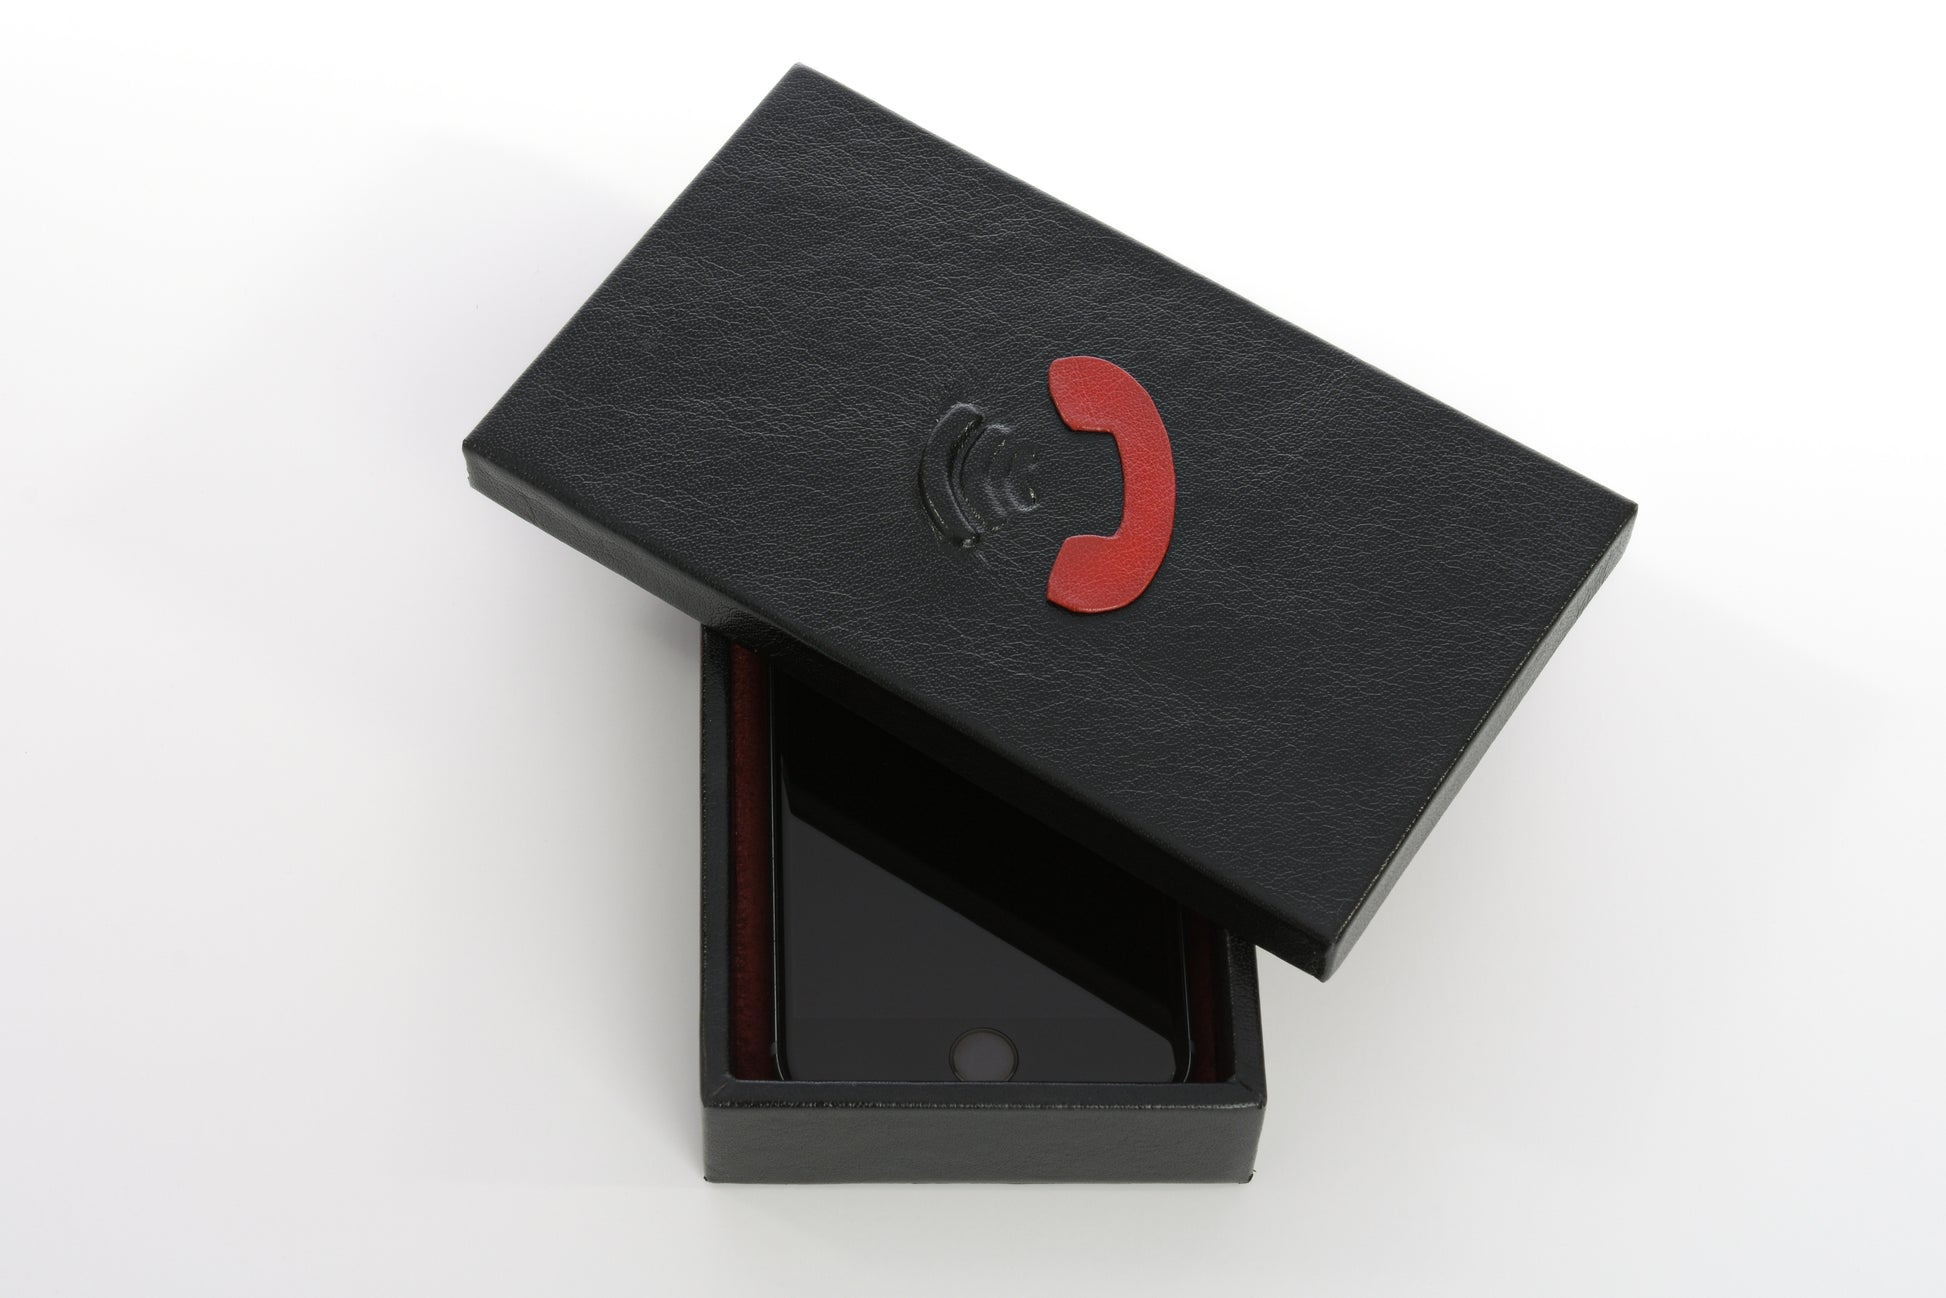 boîte gainée en cuir PHONE de Red Point ouverte avec un téléphone à l'intérieur